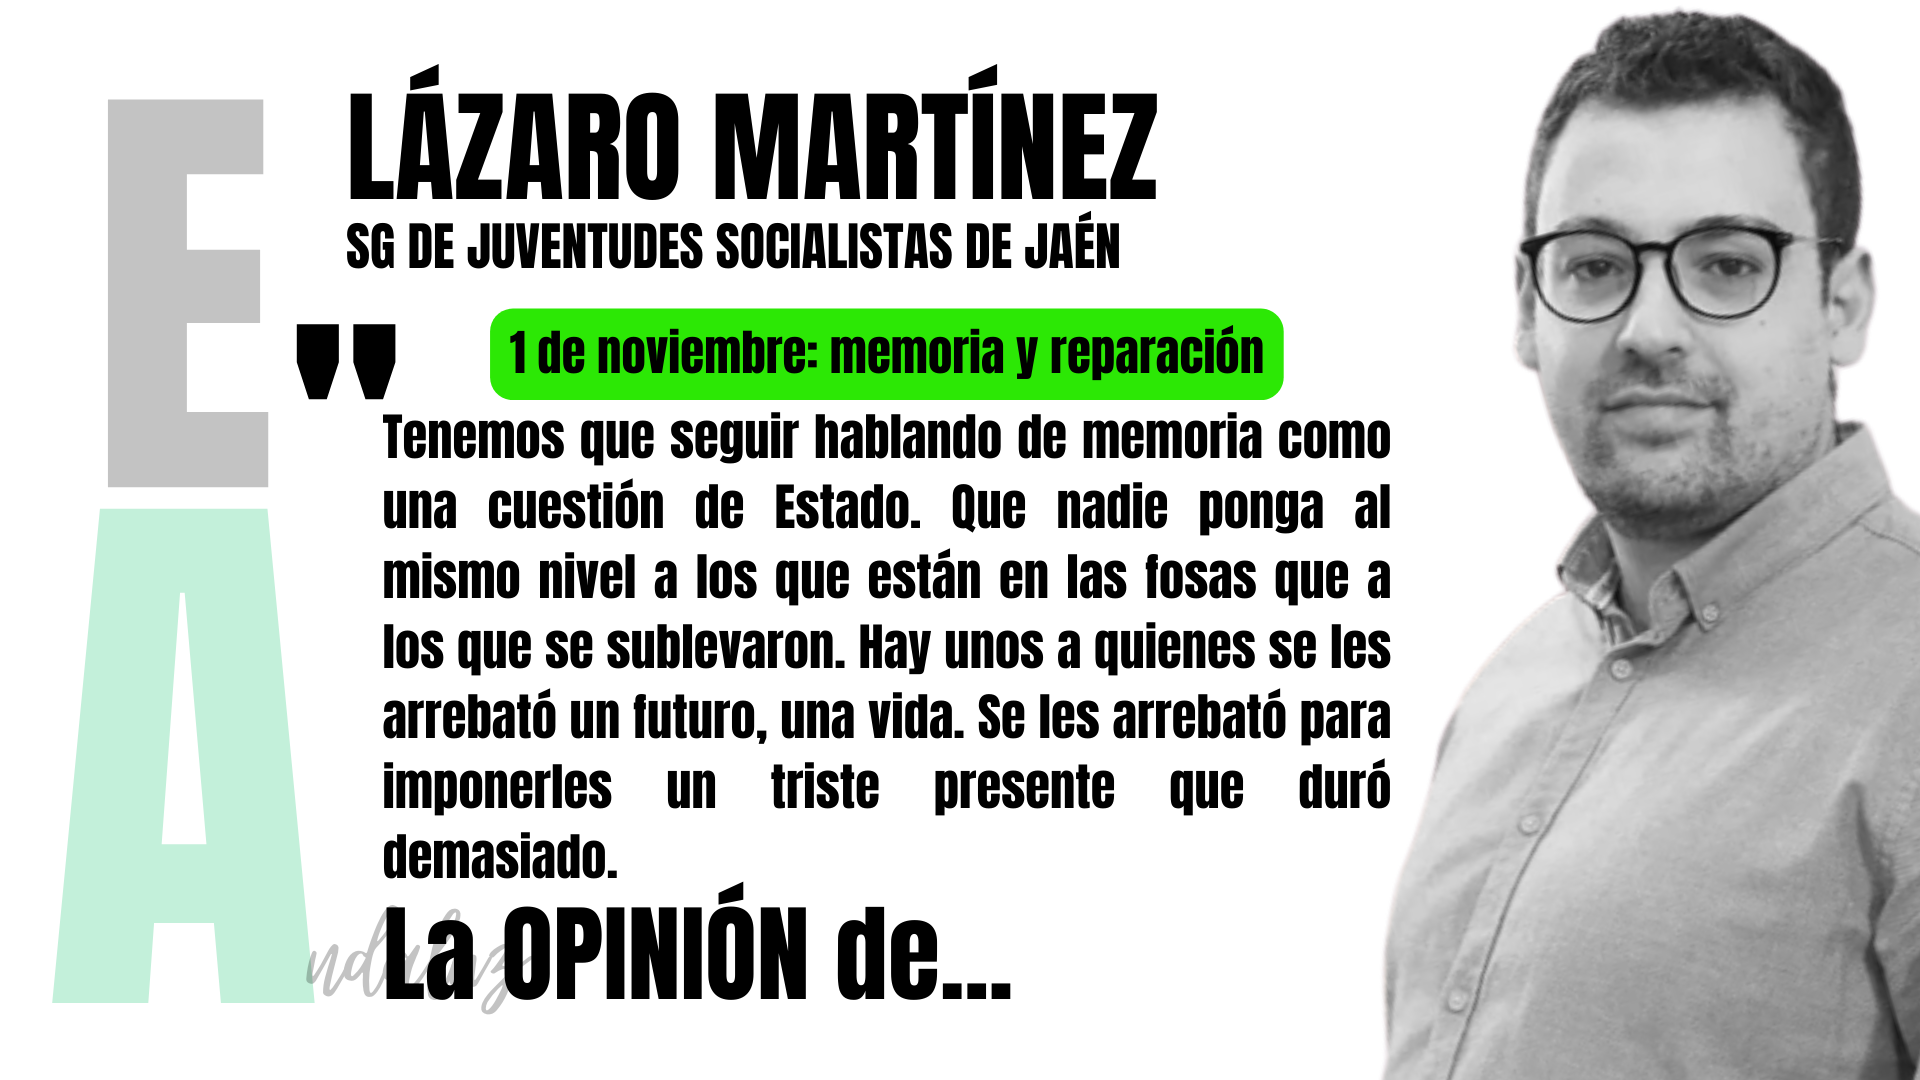 Artículo de Lázaro Martínez, secretario general de Juventudes Socialistas de Jaén: "1 de noviembre: memoria y reparación"